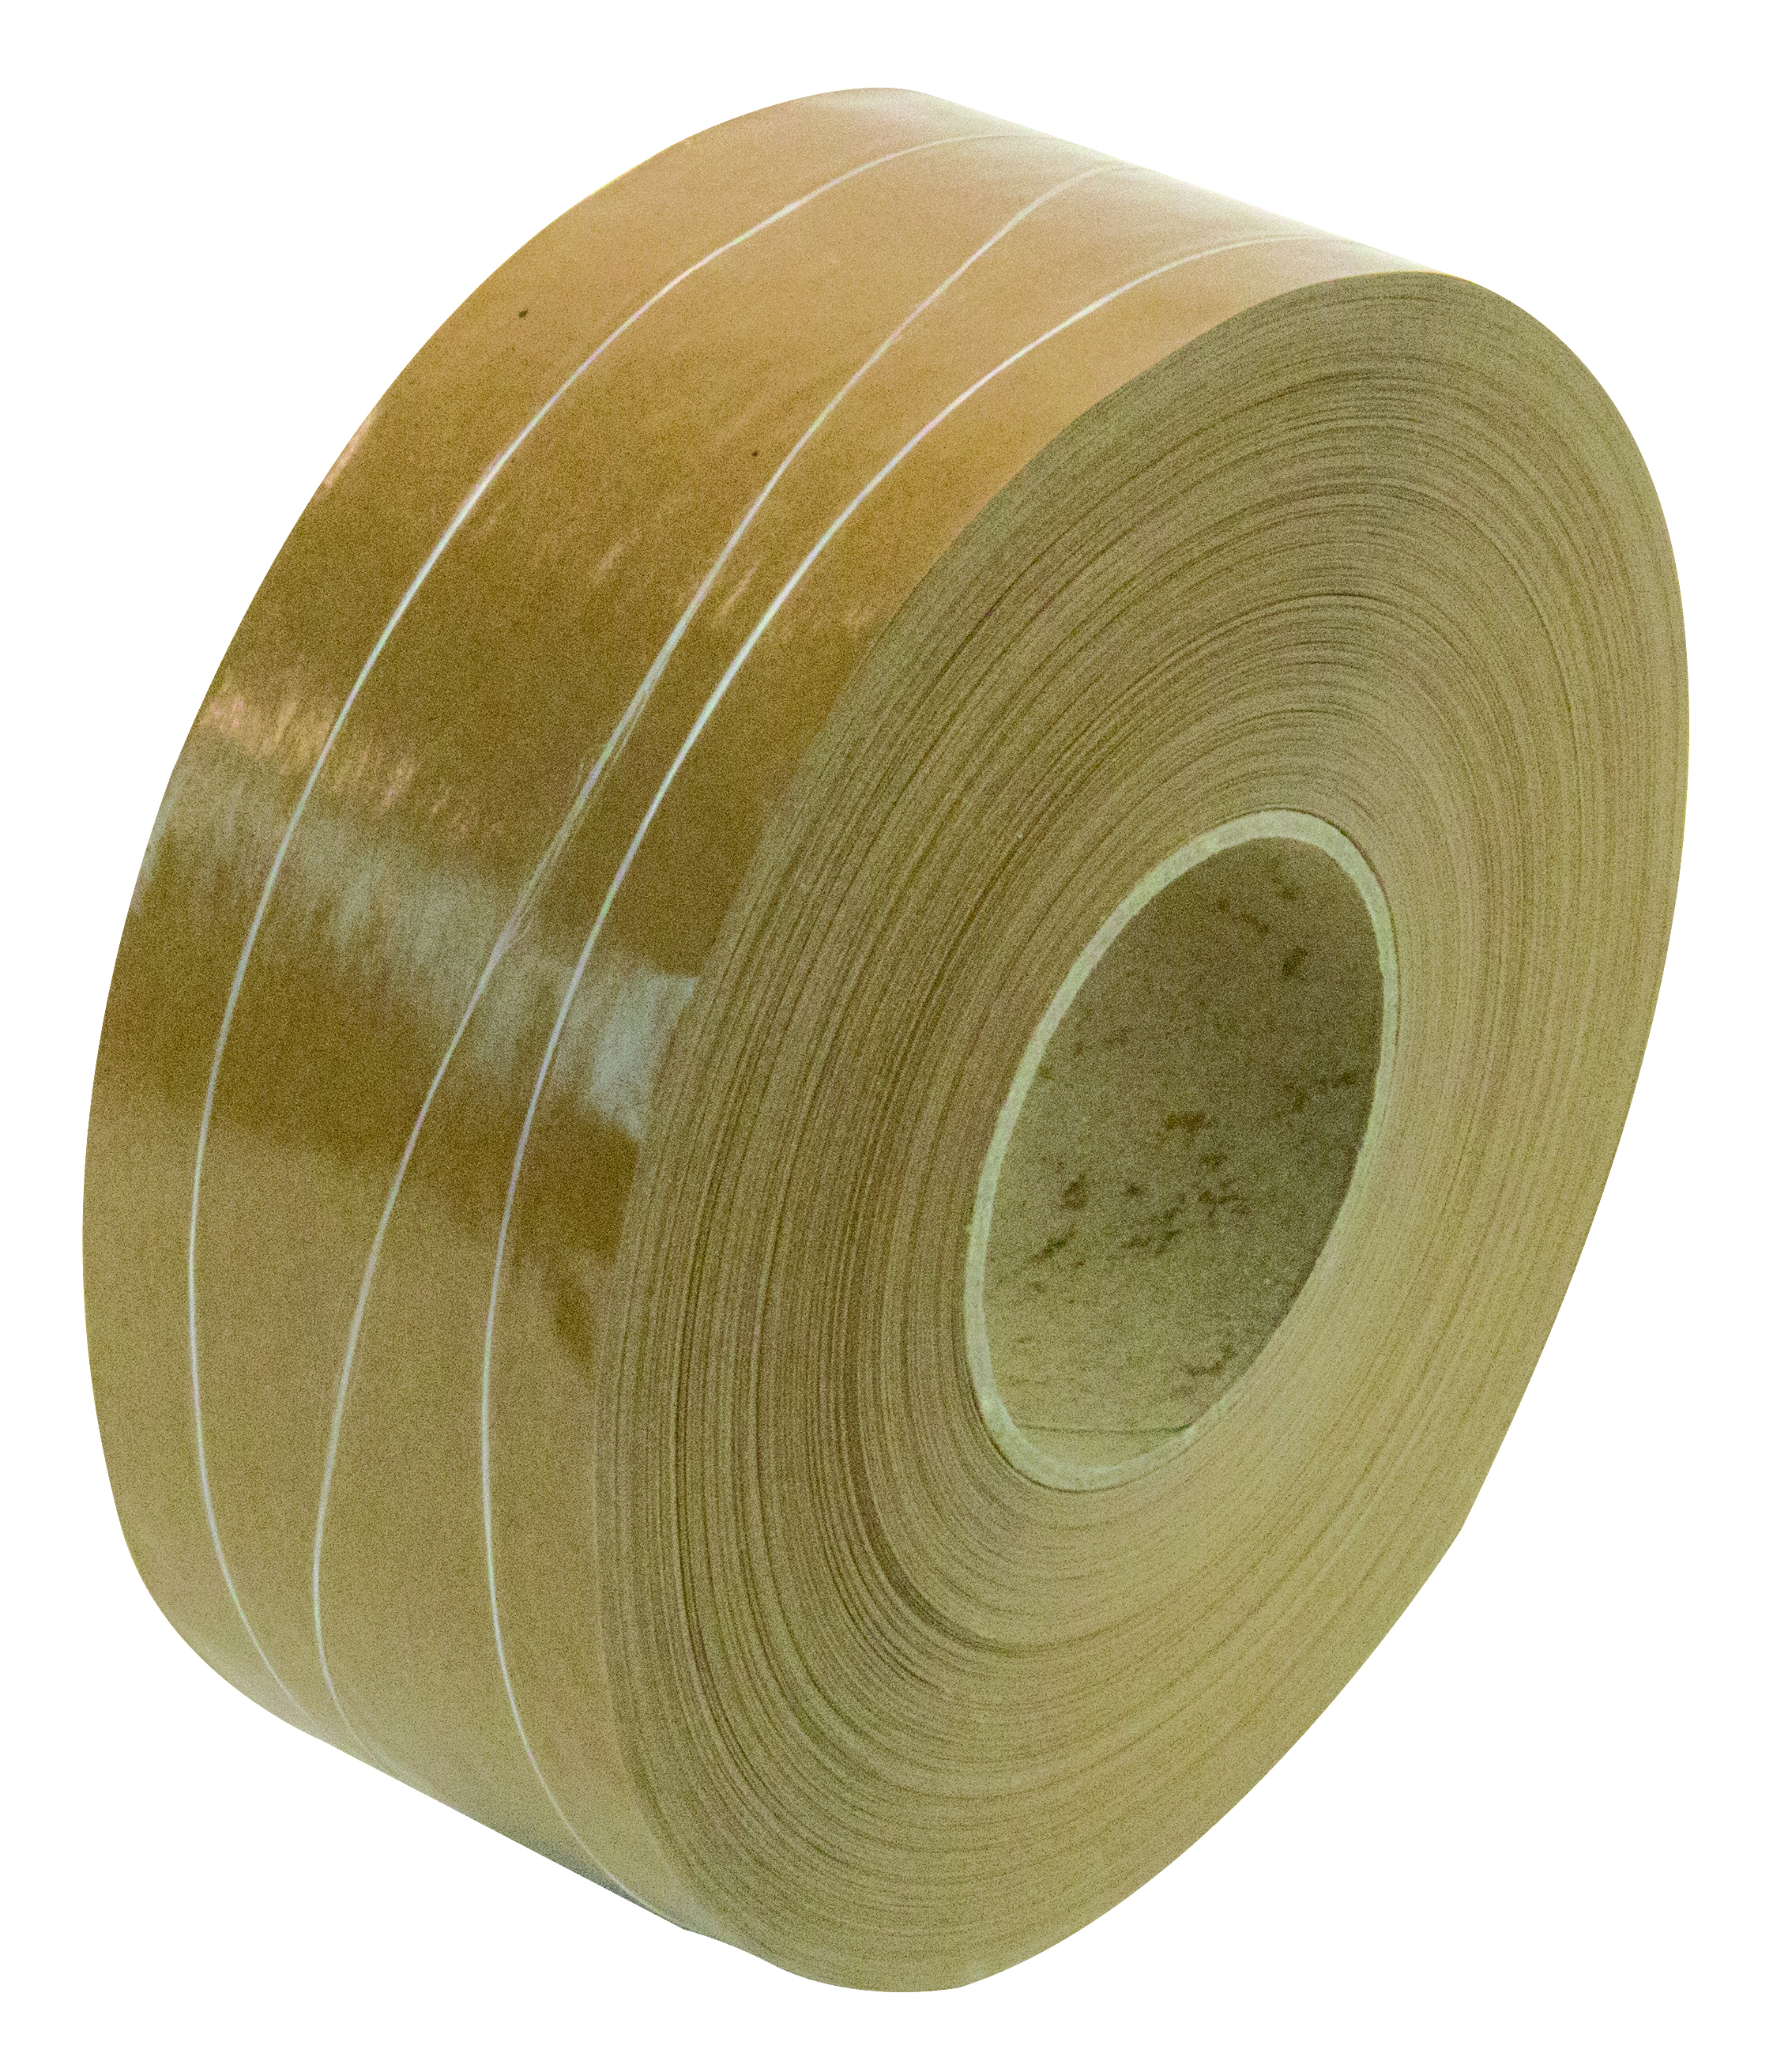 Papieren plakband 2 draads + sinus versterkt Zeer sterk en meest duurzame sluitmateriaal. Voor zware pakketten met een gewicht van max 35kg.